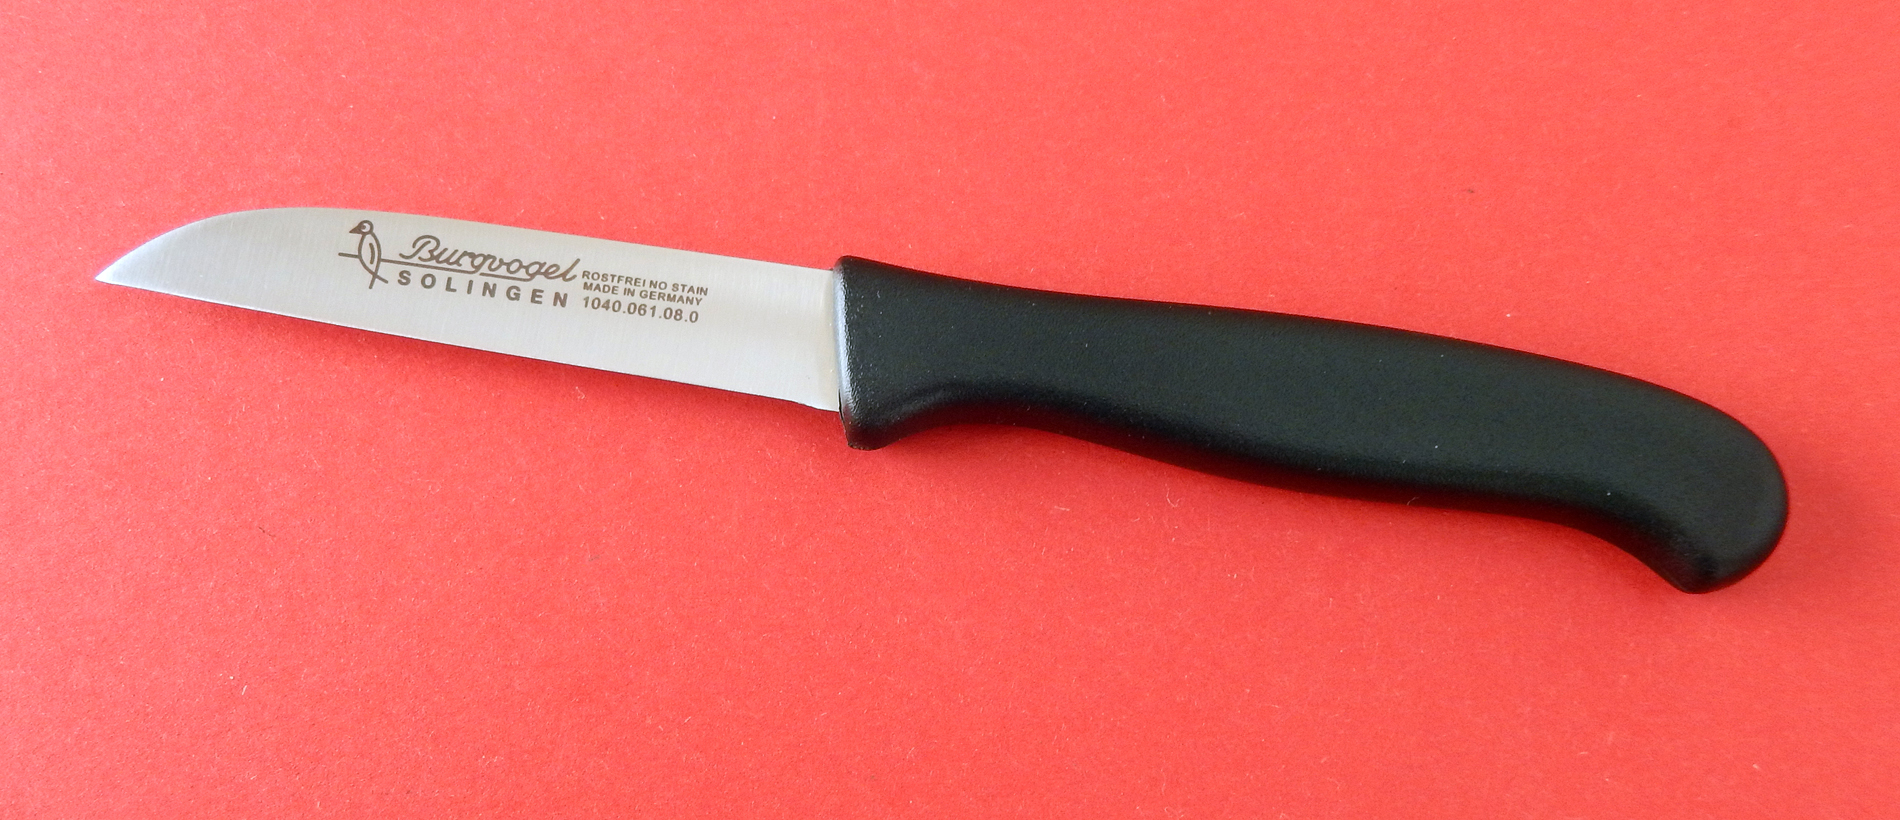 Burgvogel Gemüssemesser 8,5 cm, rostfrei, Quality Made in SG bei ISS